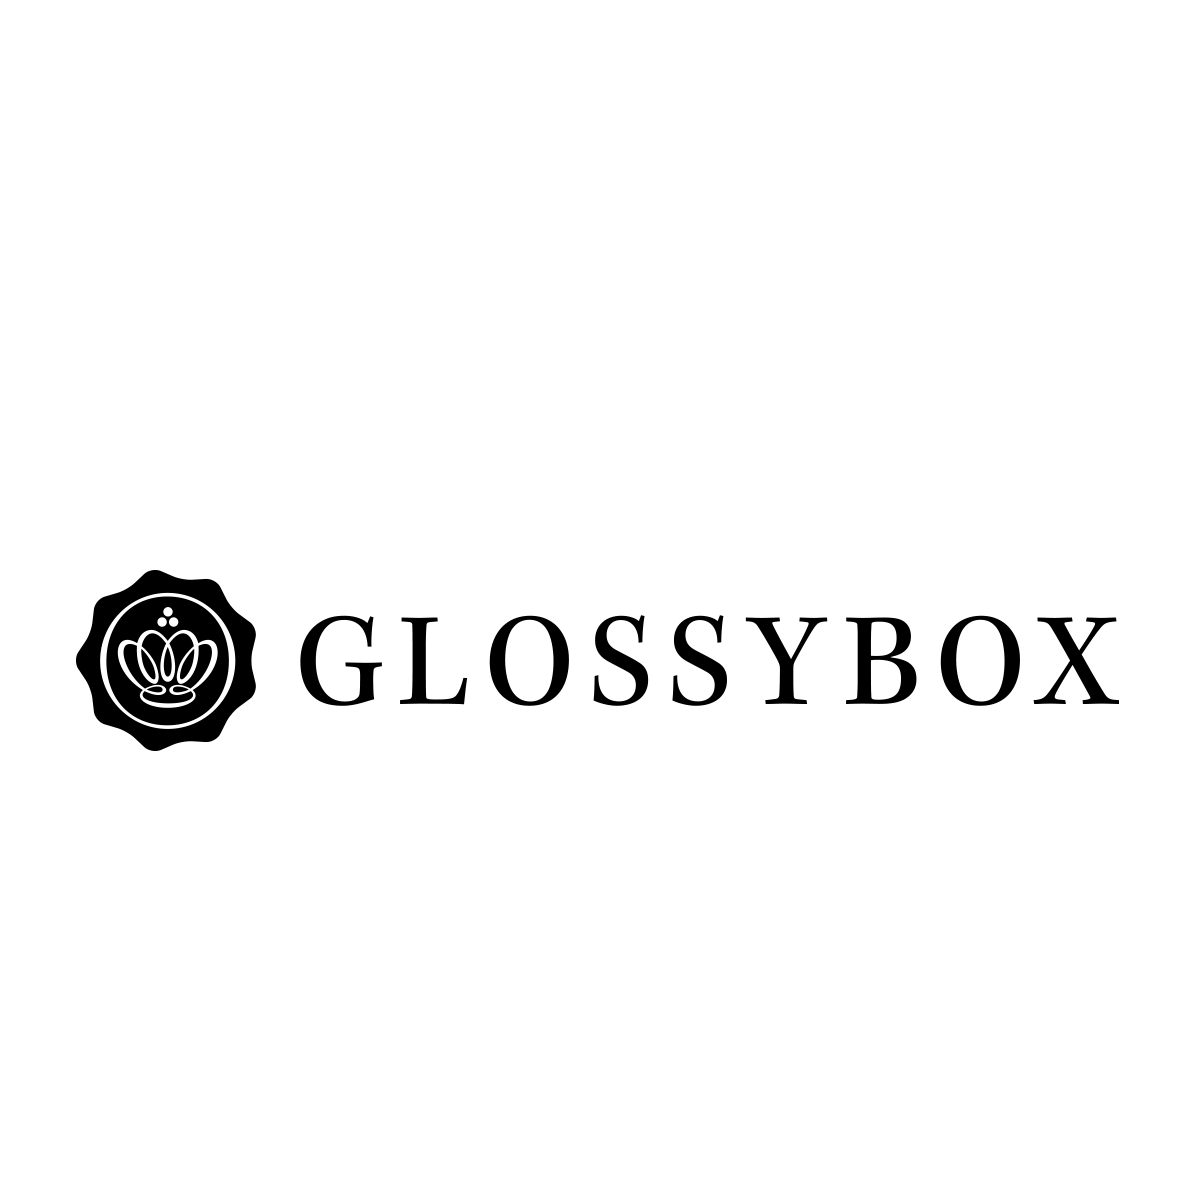 (c) Glossybox.at